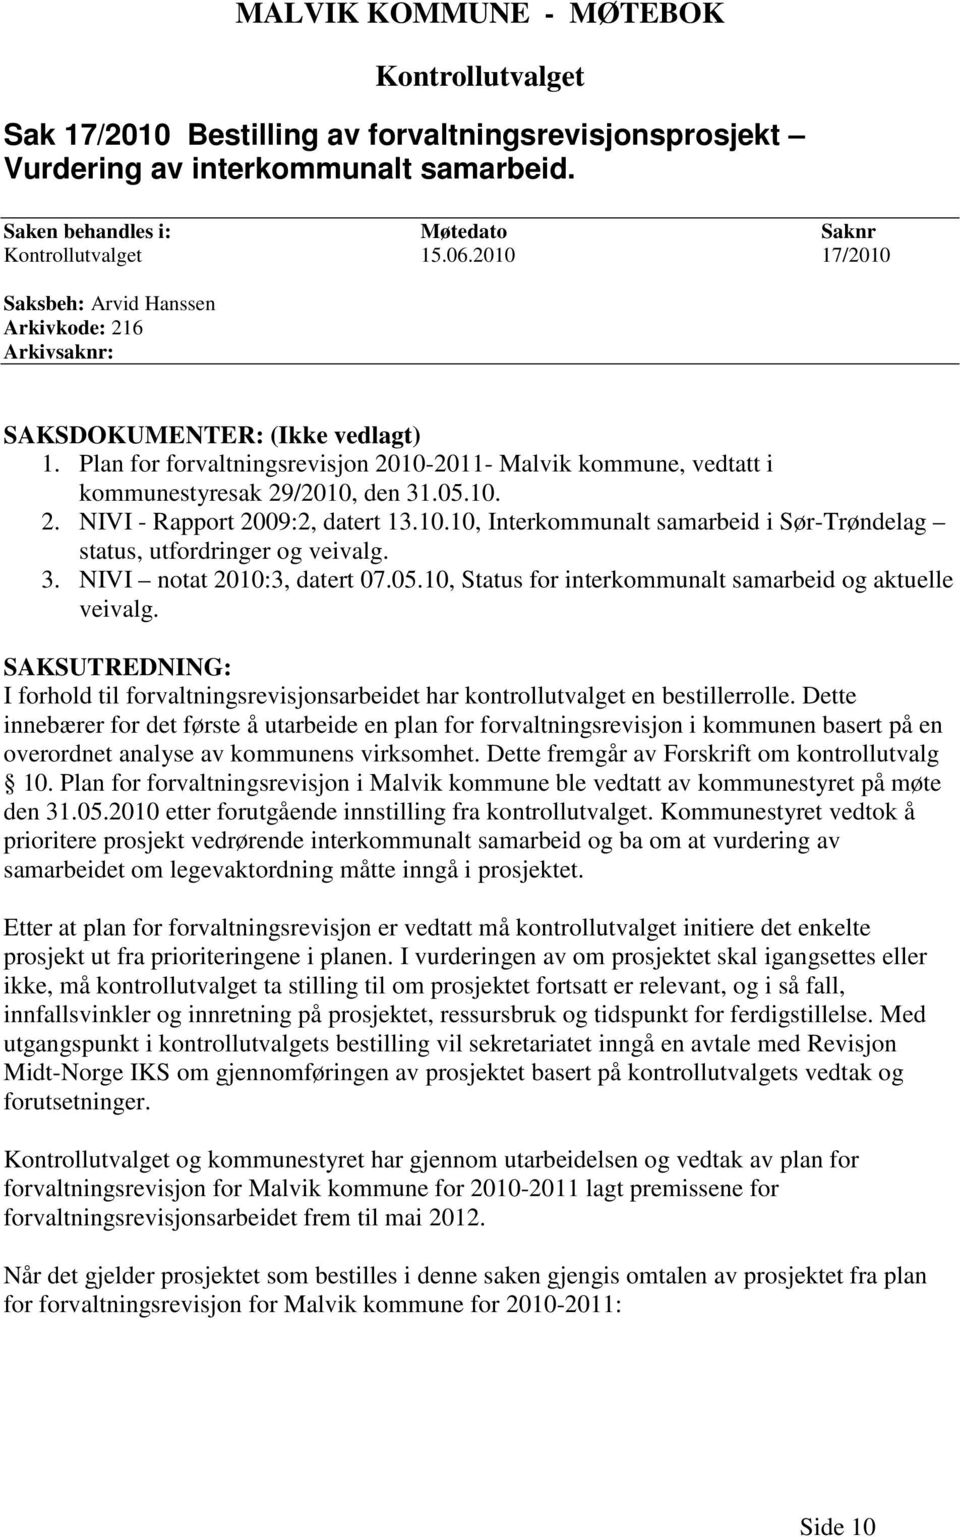 10. 2. NIVI - Rapport 2009:2, datert 13.10.10, Interkommunalt samarbeid i Sør-Trøndelag status, utfordringer og veivalg. 3. NIVI notat 2010:3, datert 07.05.